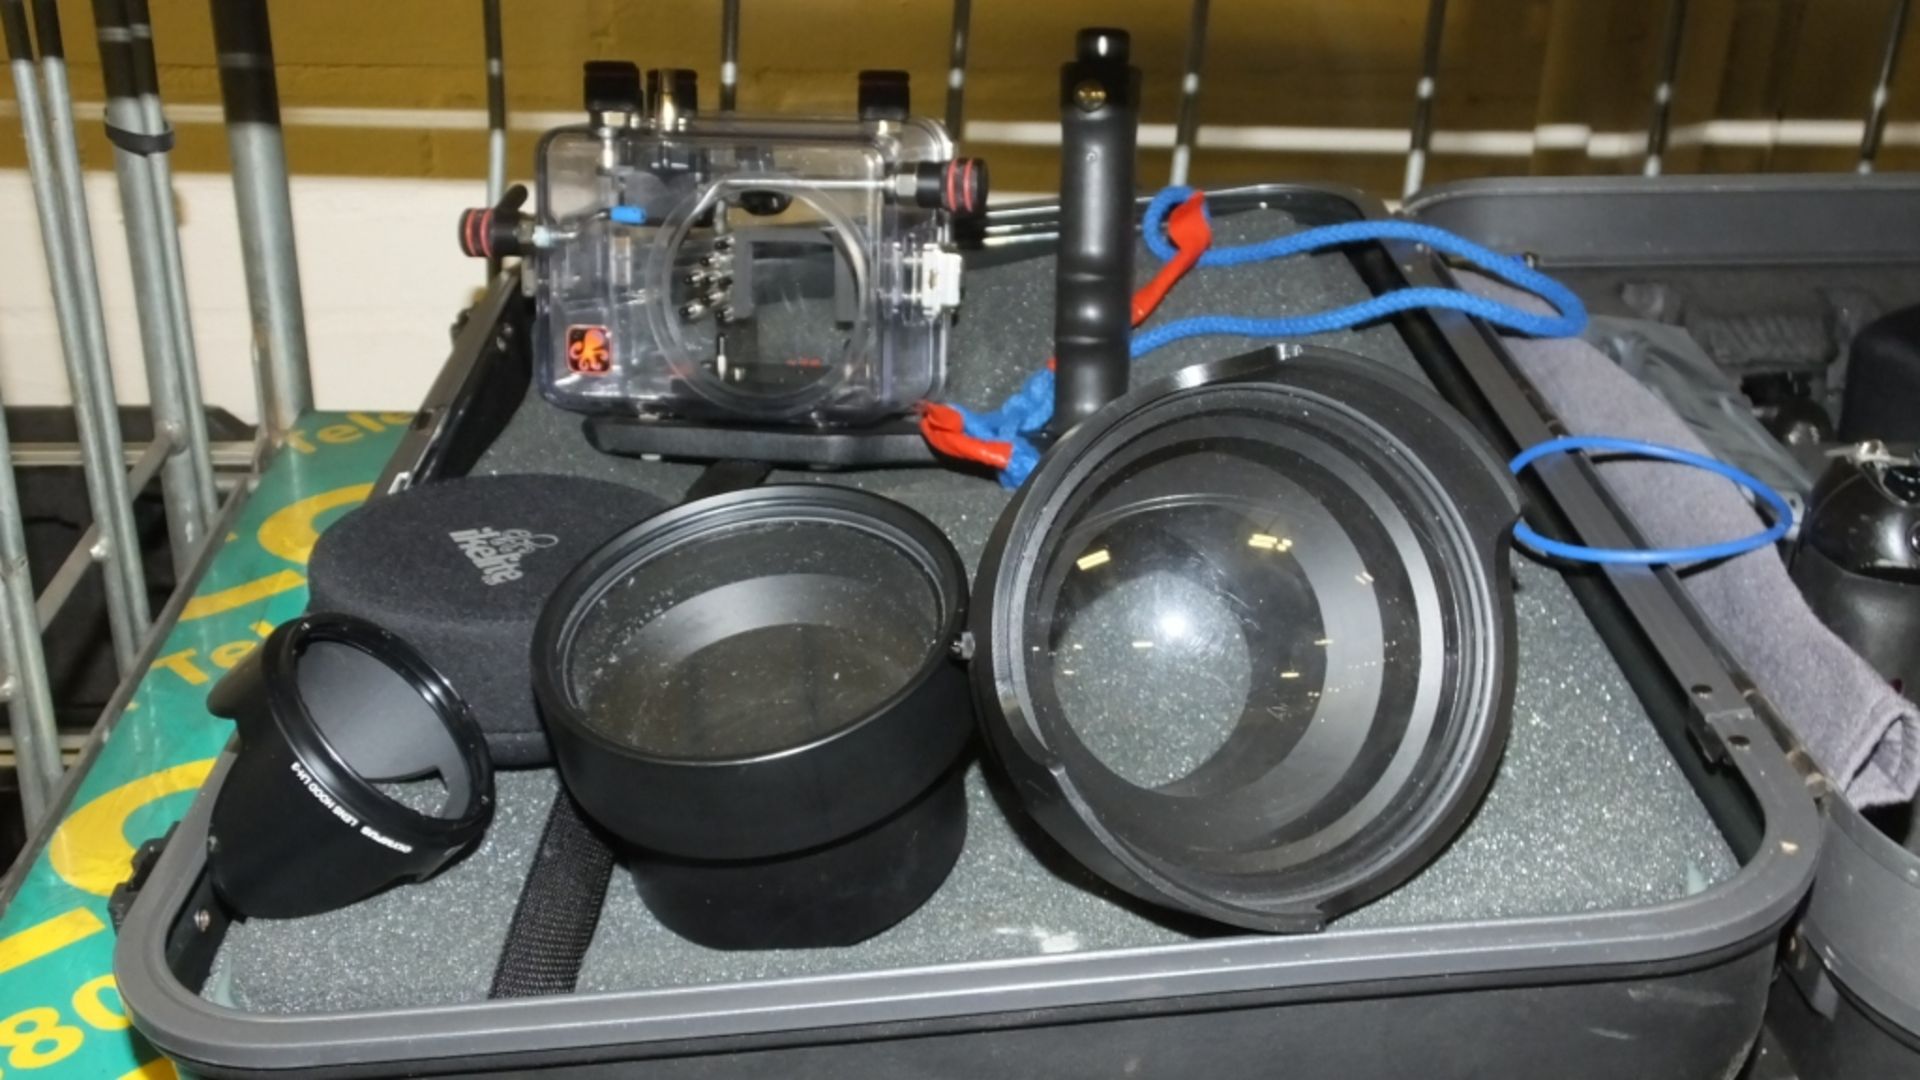 Olympus Under watercamer kit - 2x Olympus C-8080 cameras, Ikelite Fish Eye convertor lens, - Image 3 of 3